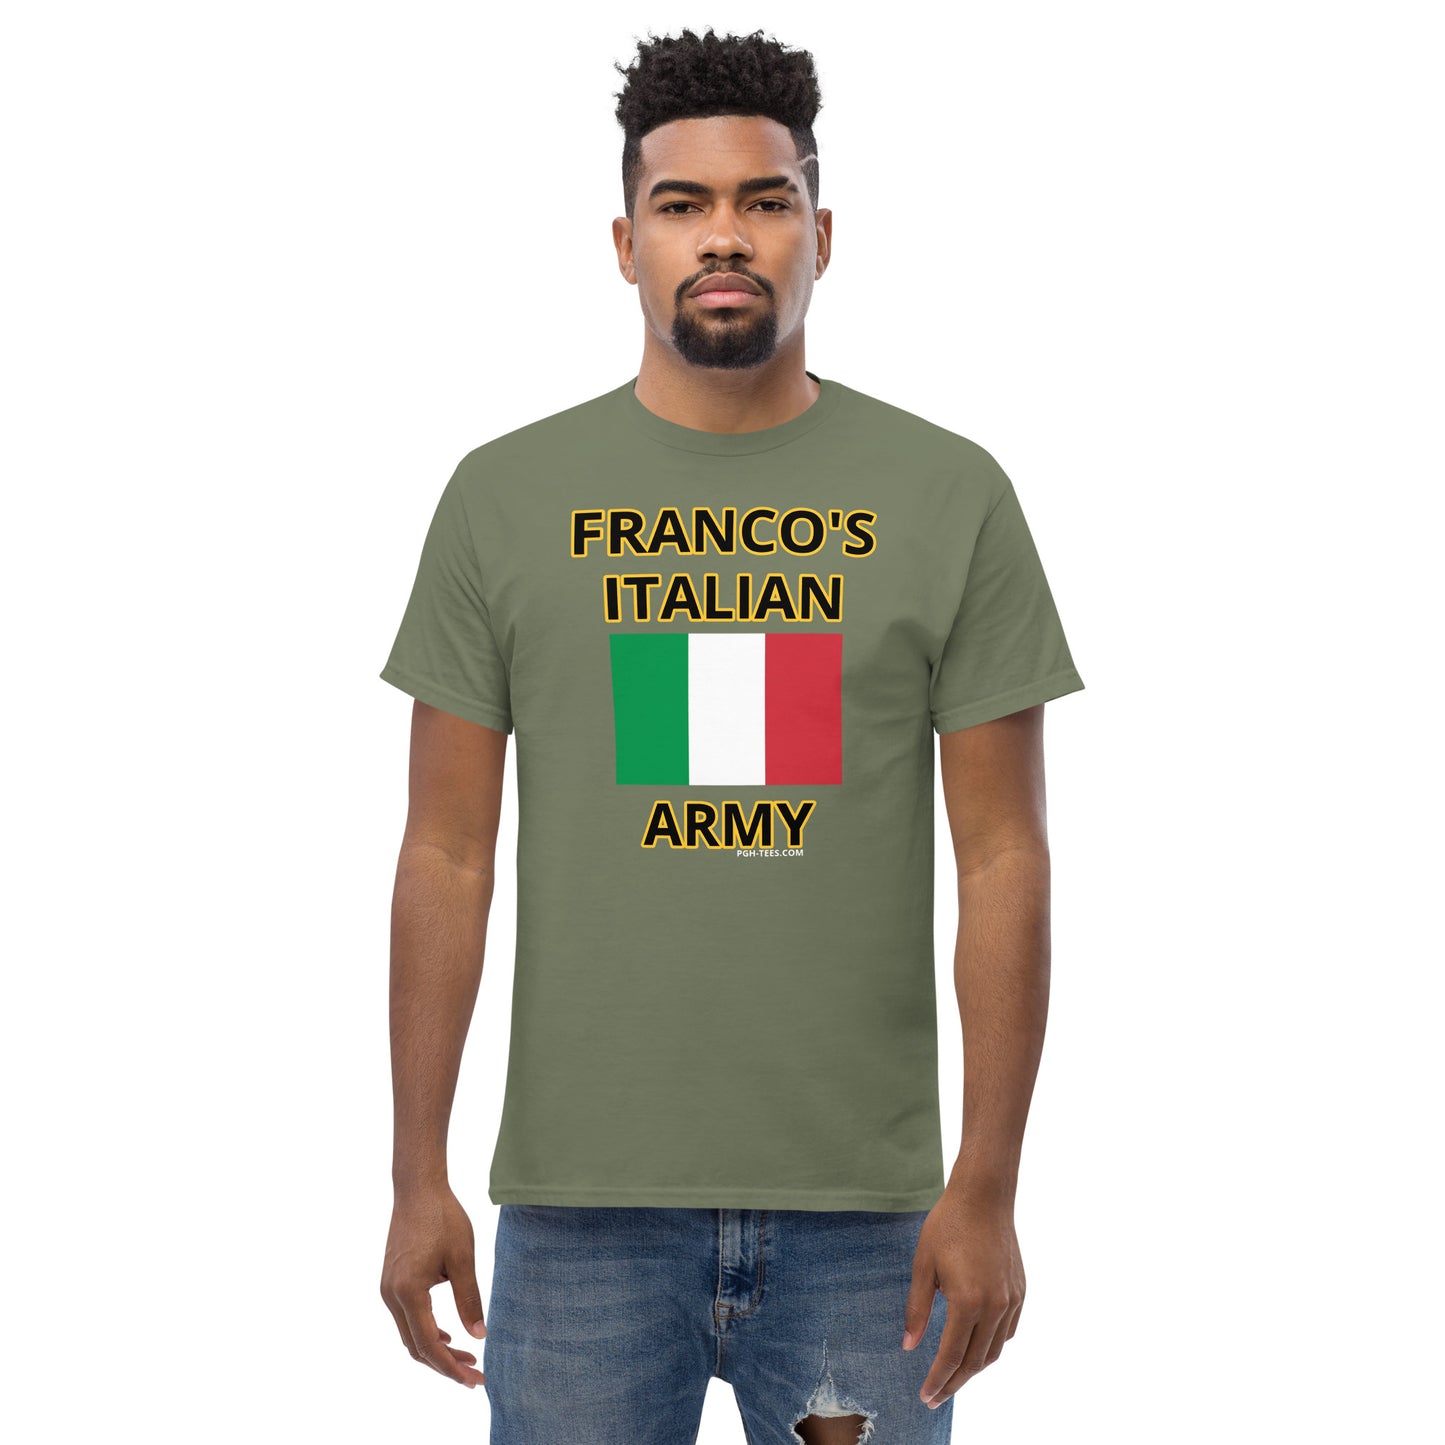 FRANCO'S ITALIAN ARMY